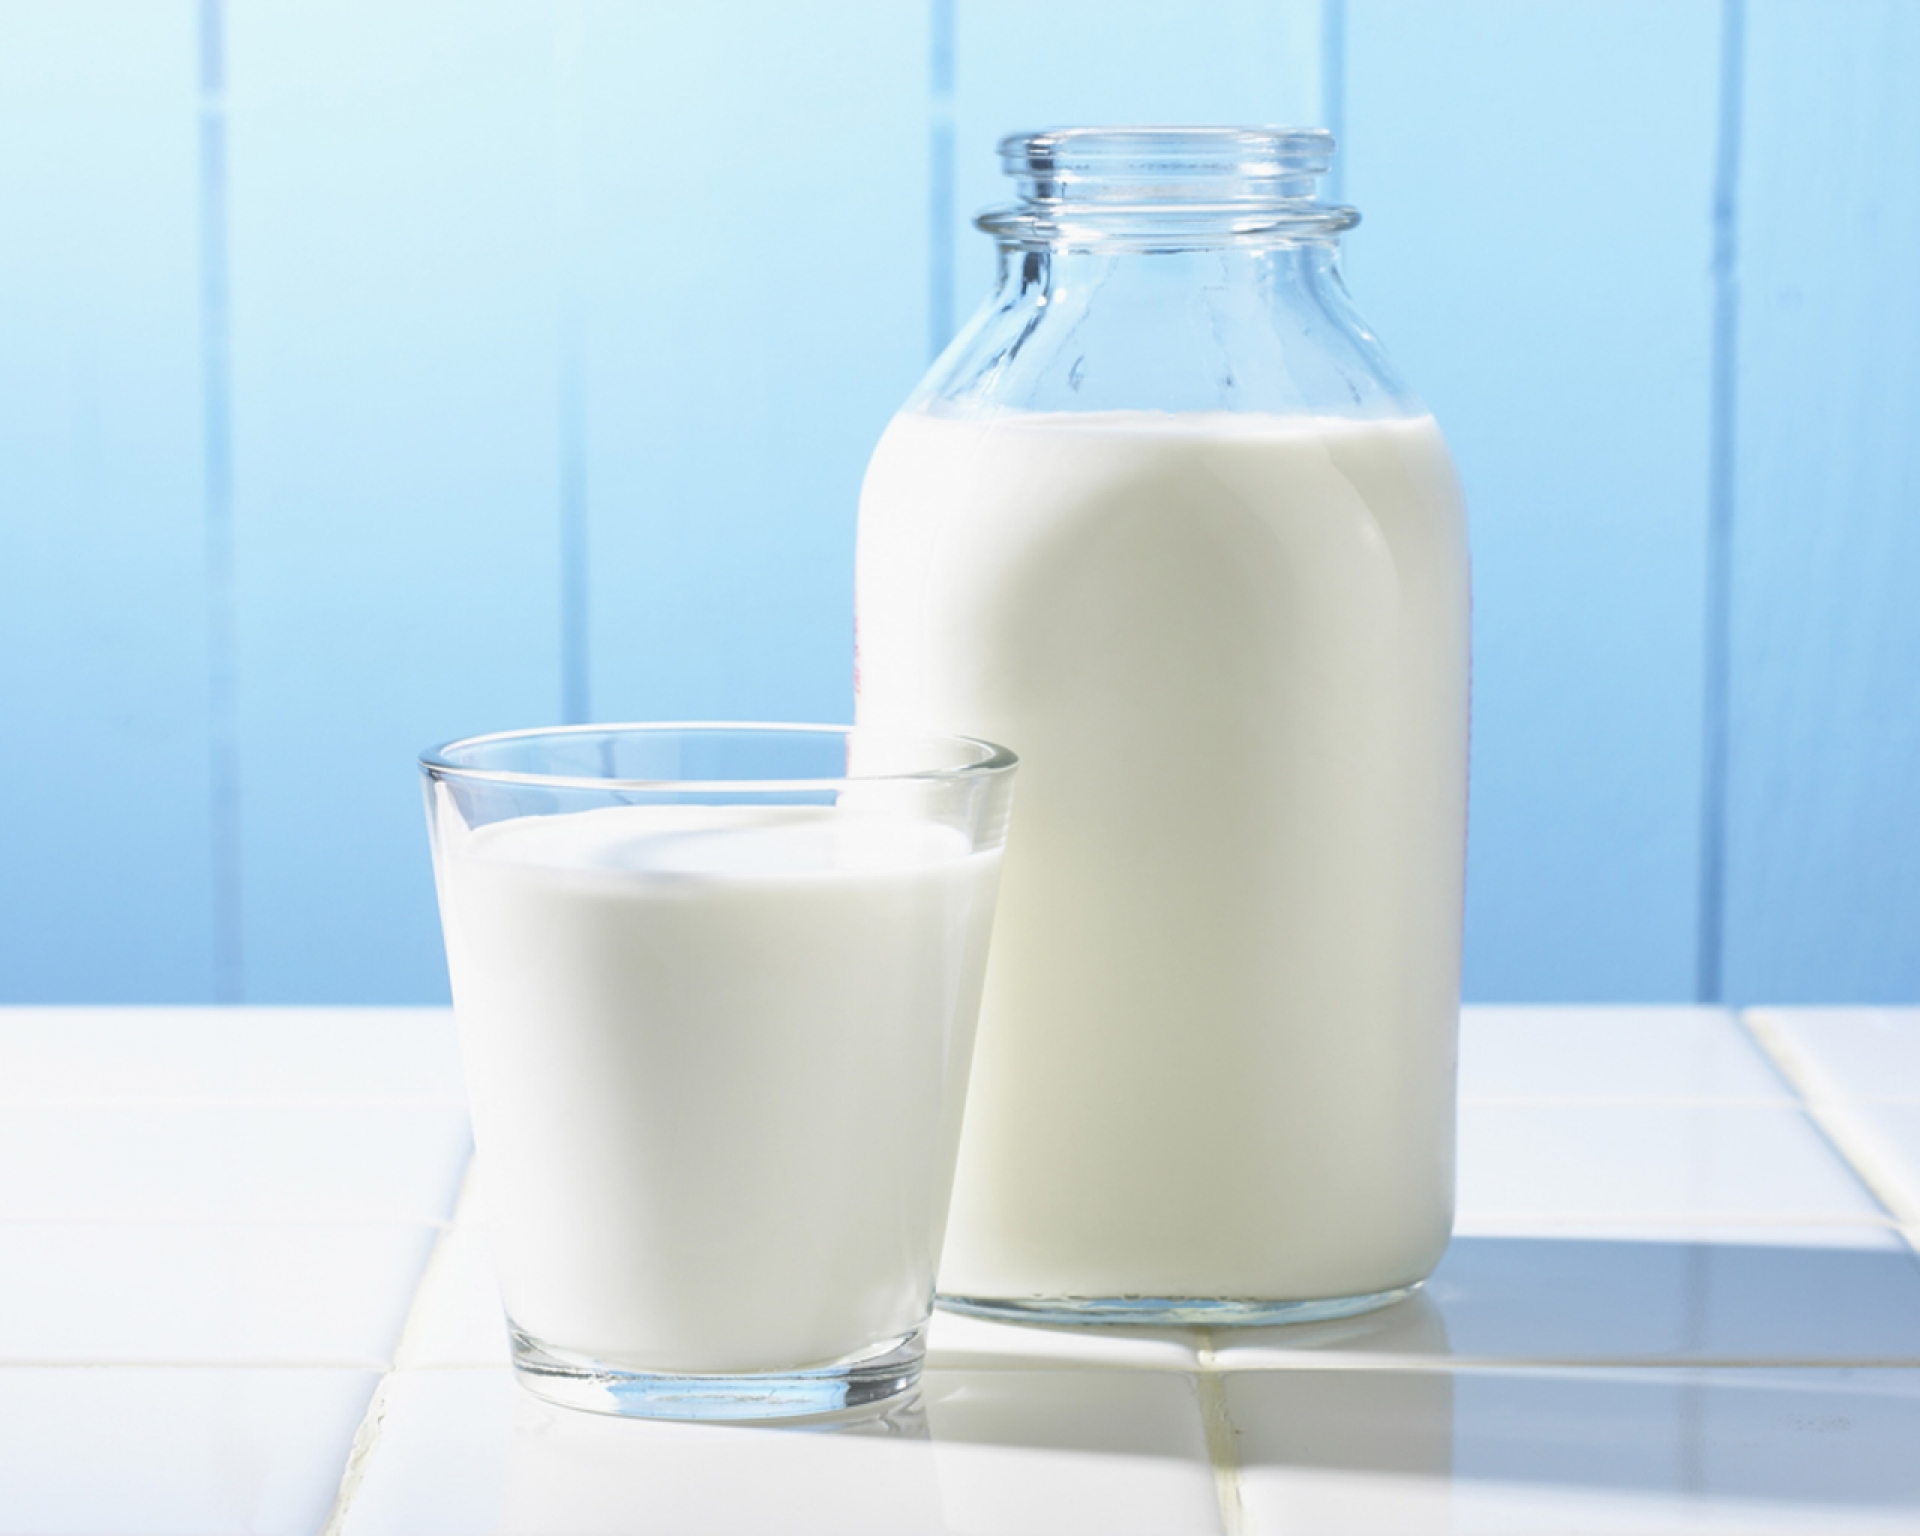 Ненастоящее молоко для детей: система способствует увеличению фальсификата